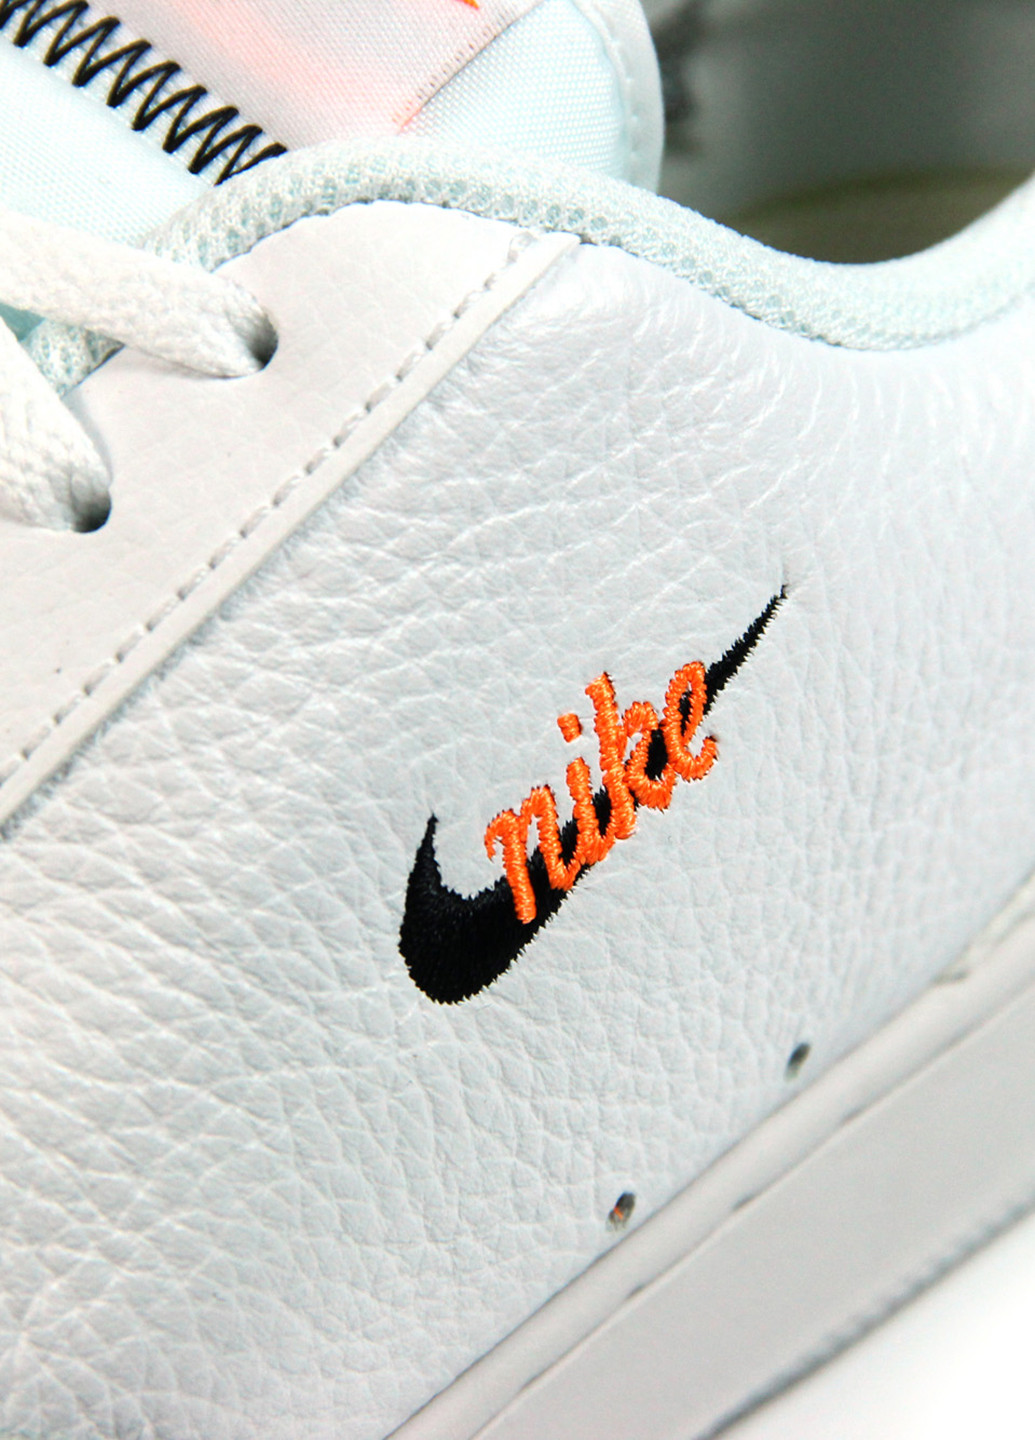 Білі Осінні чоловічі кросівки court vintage prem ct1726-100 Nike